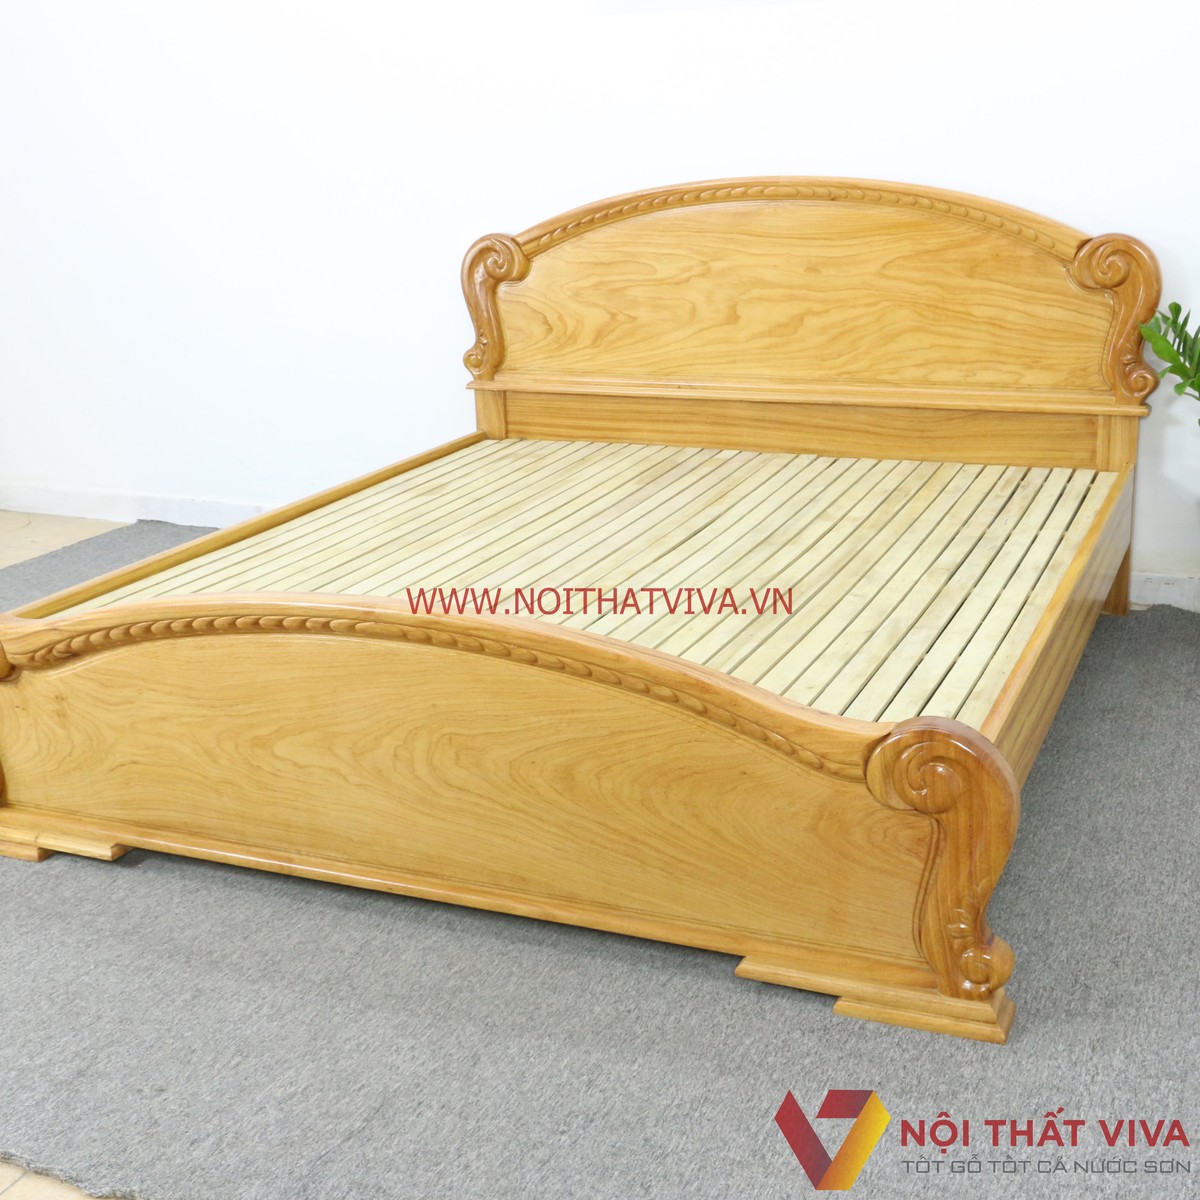 kiểu giường ngủ đẹp bằng gỗ 